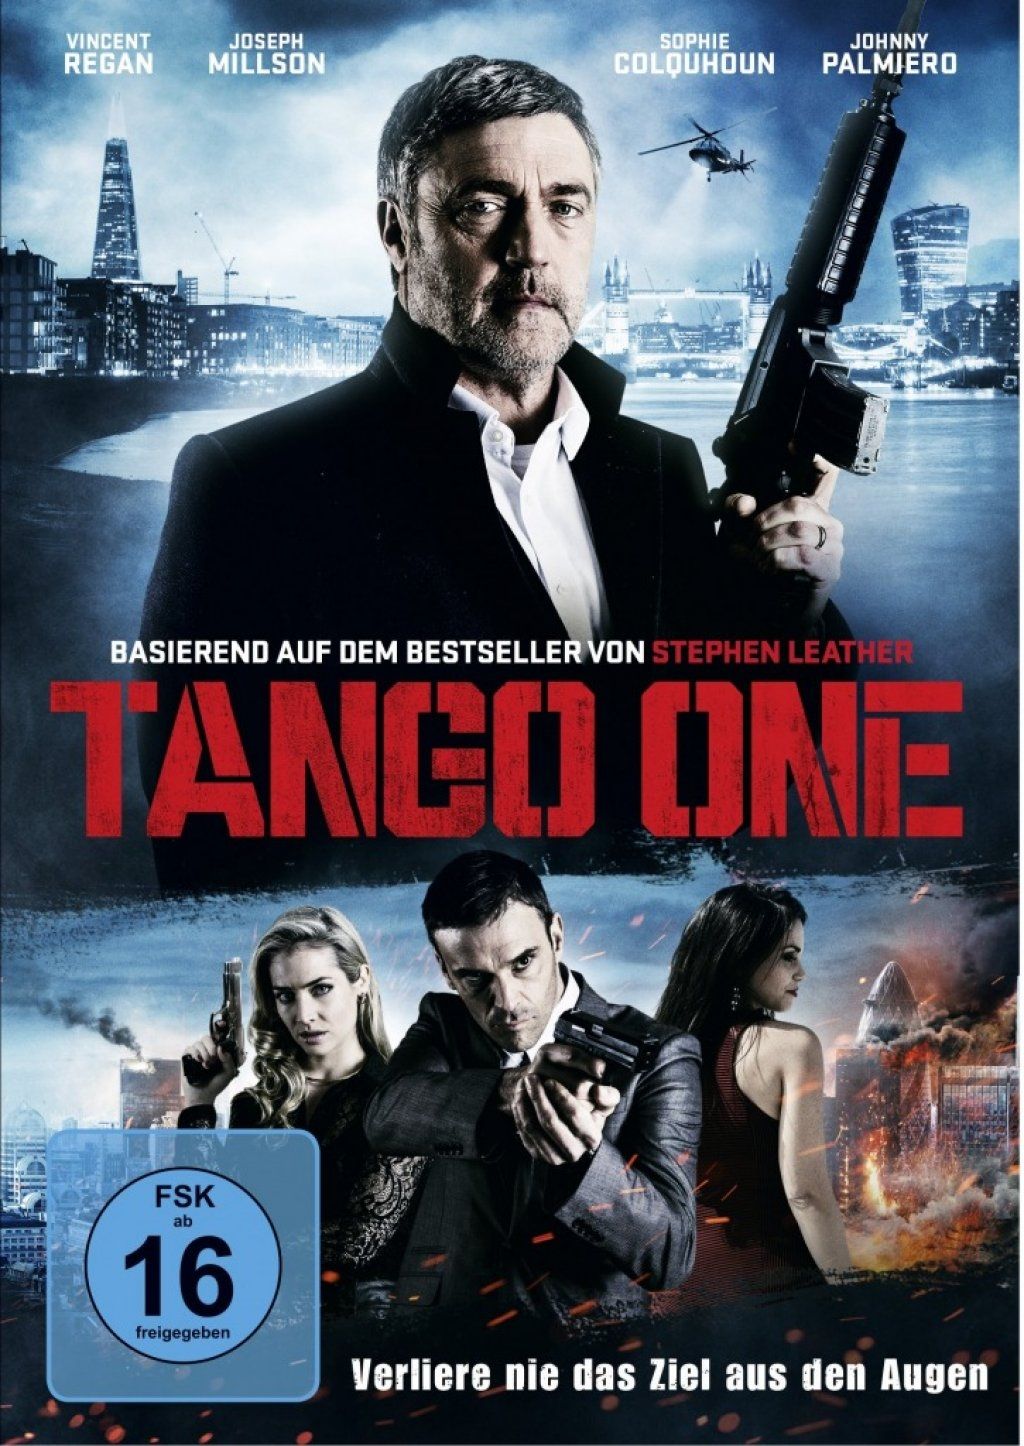 Tango One - Verliere nie das Ziel aus den Augen